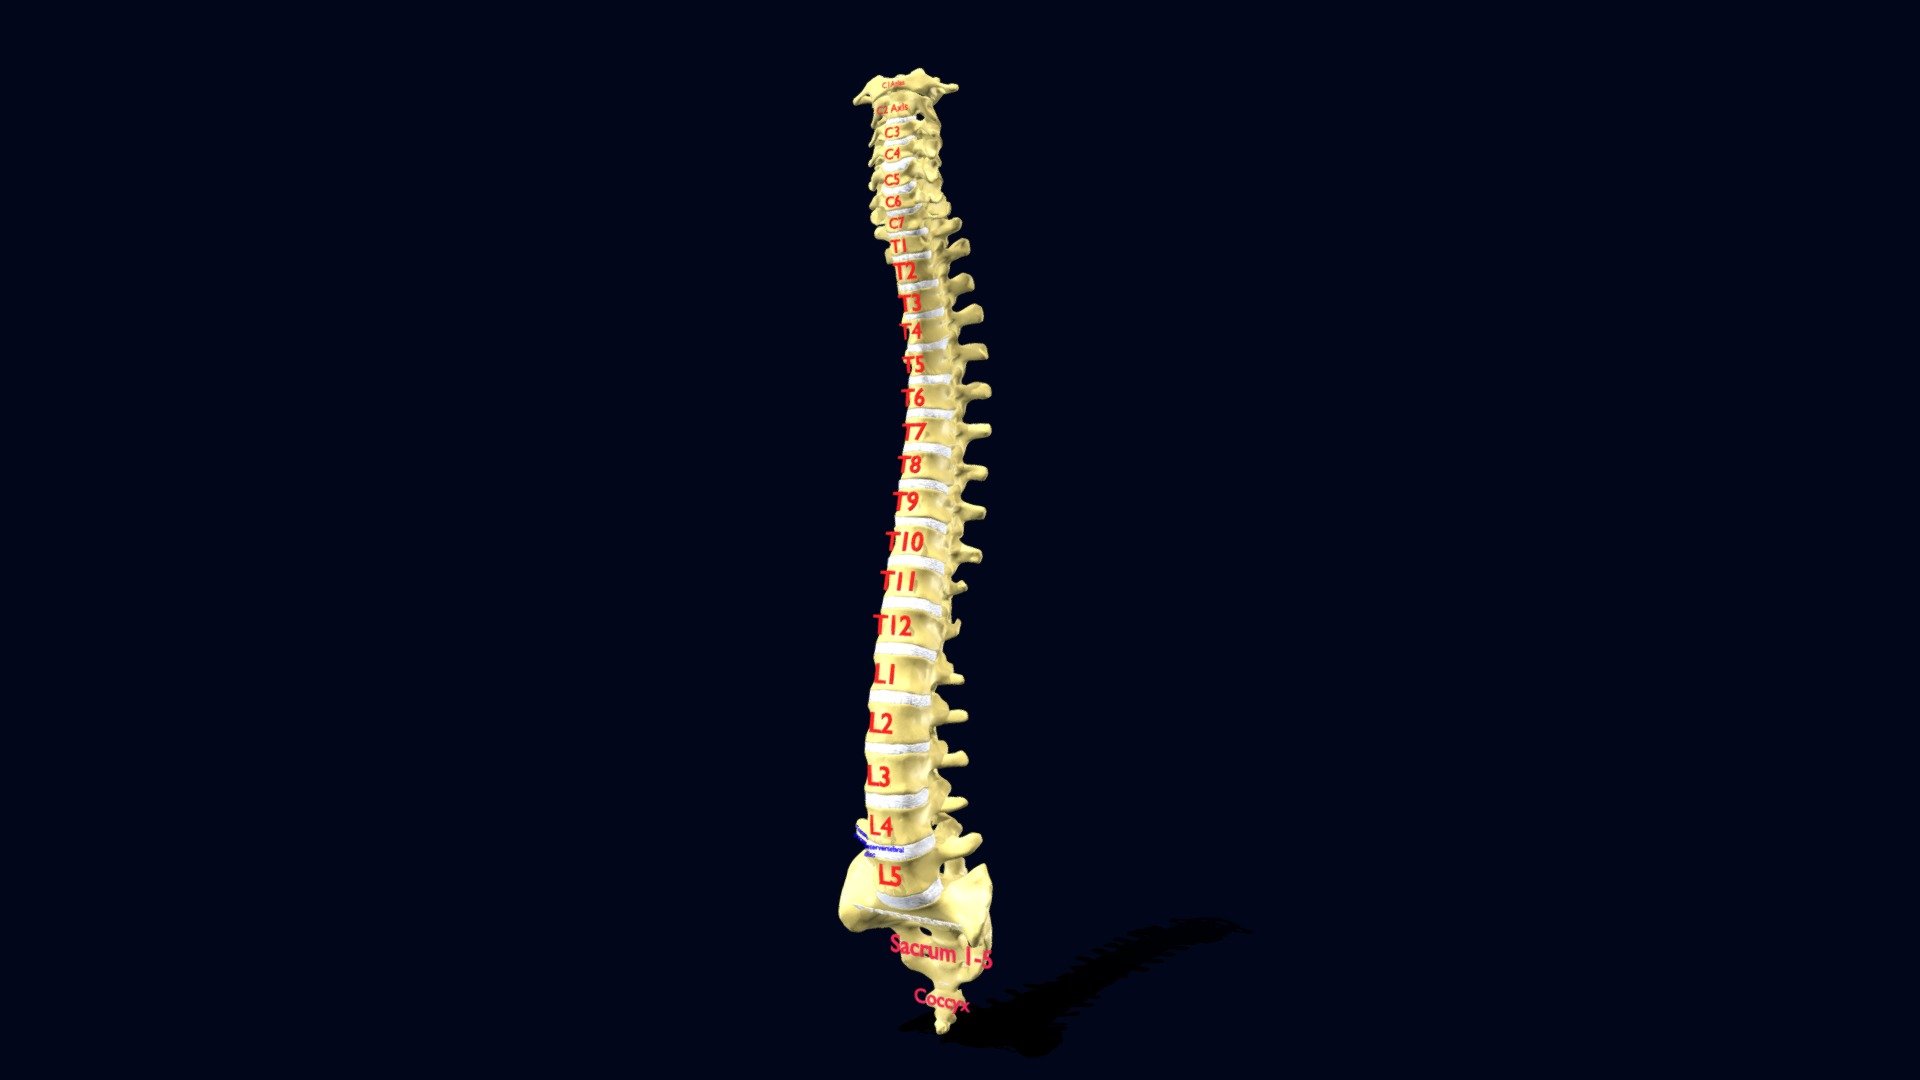 Vertebrae vertebral column labelled text detail